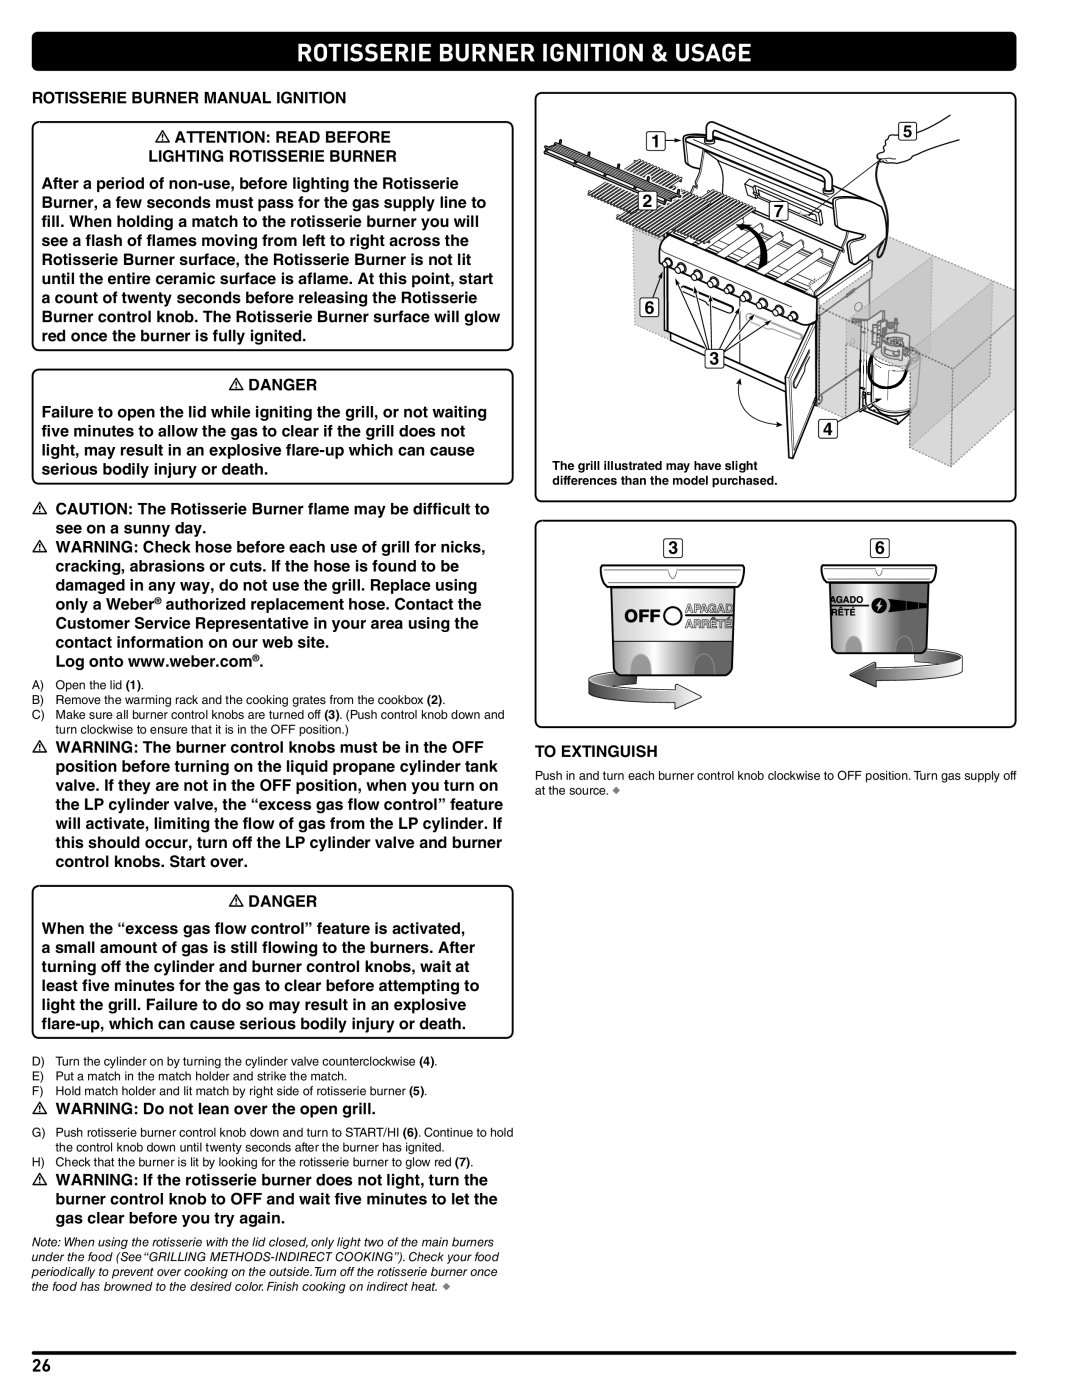 Weber Weber, 660- LP manual Rotisserie Burner Manual Ignition 